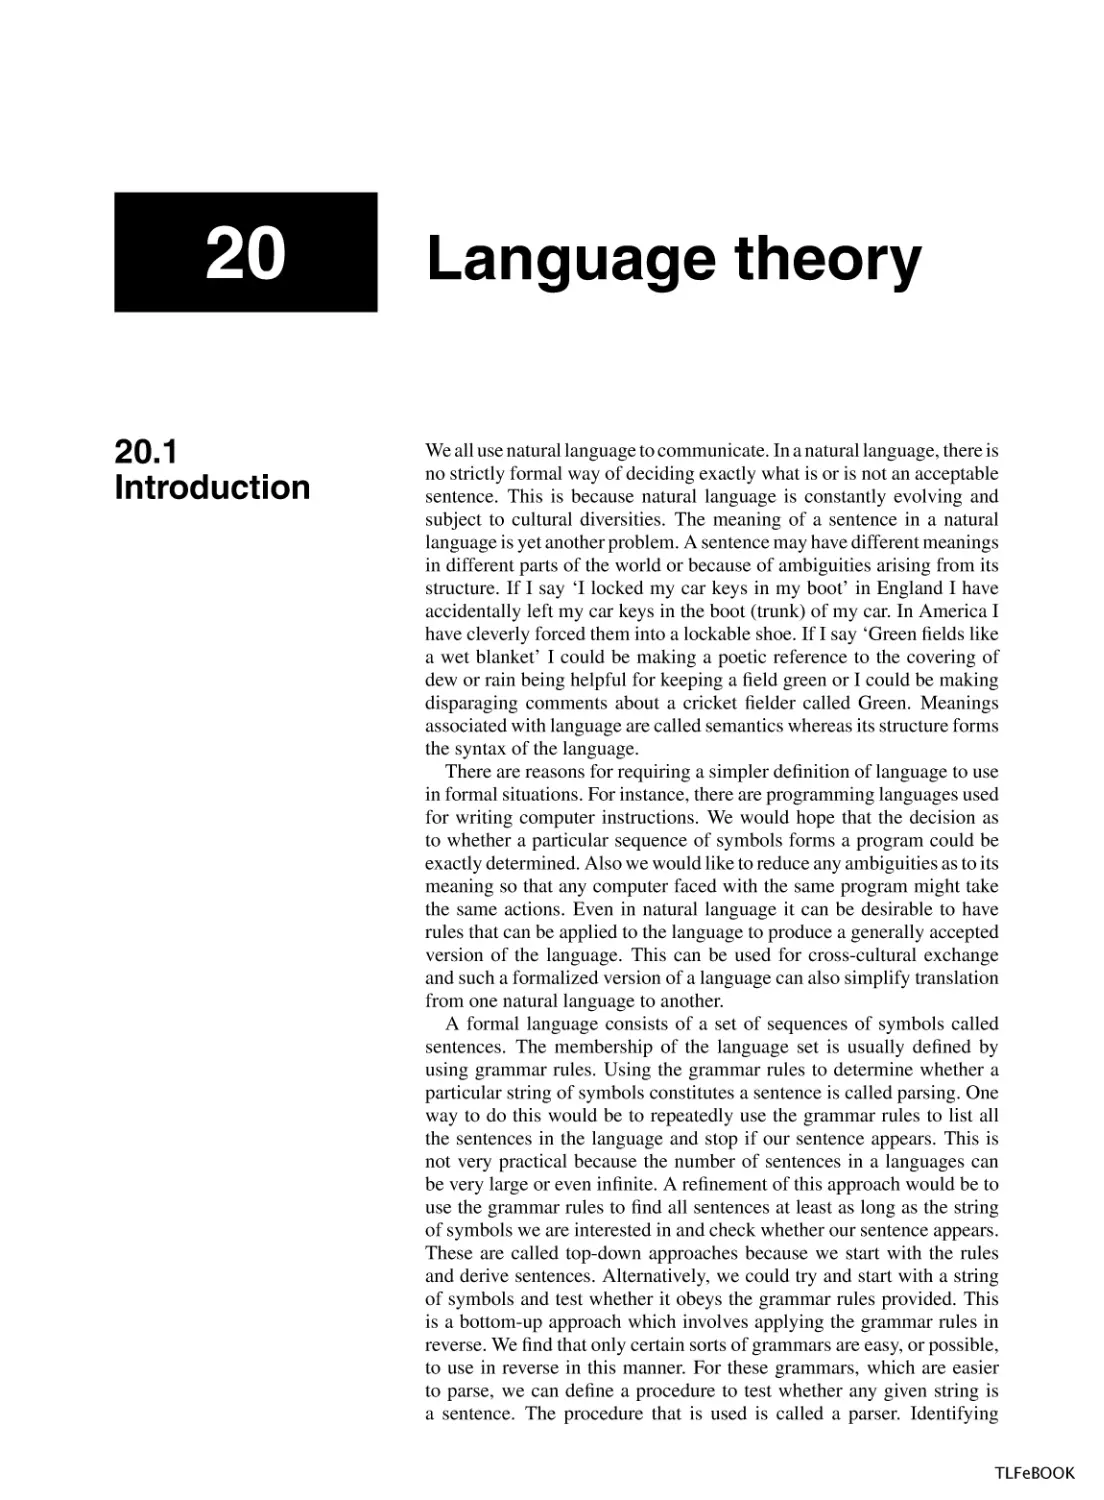 Language Theory